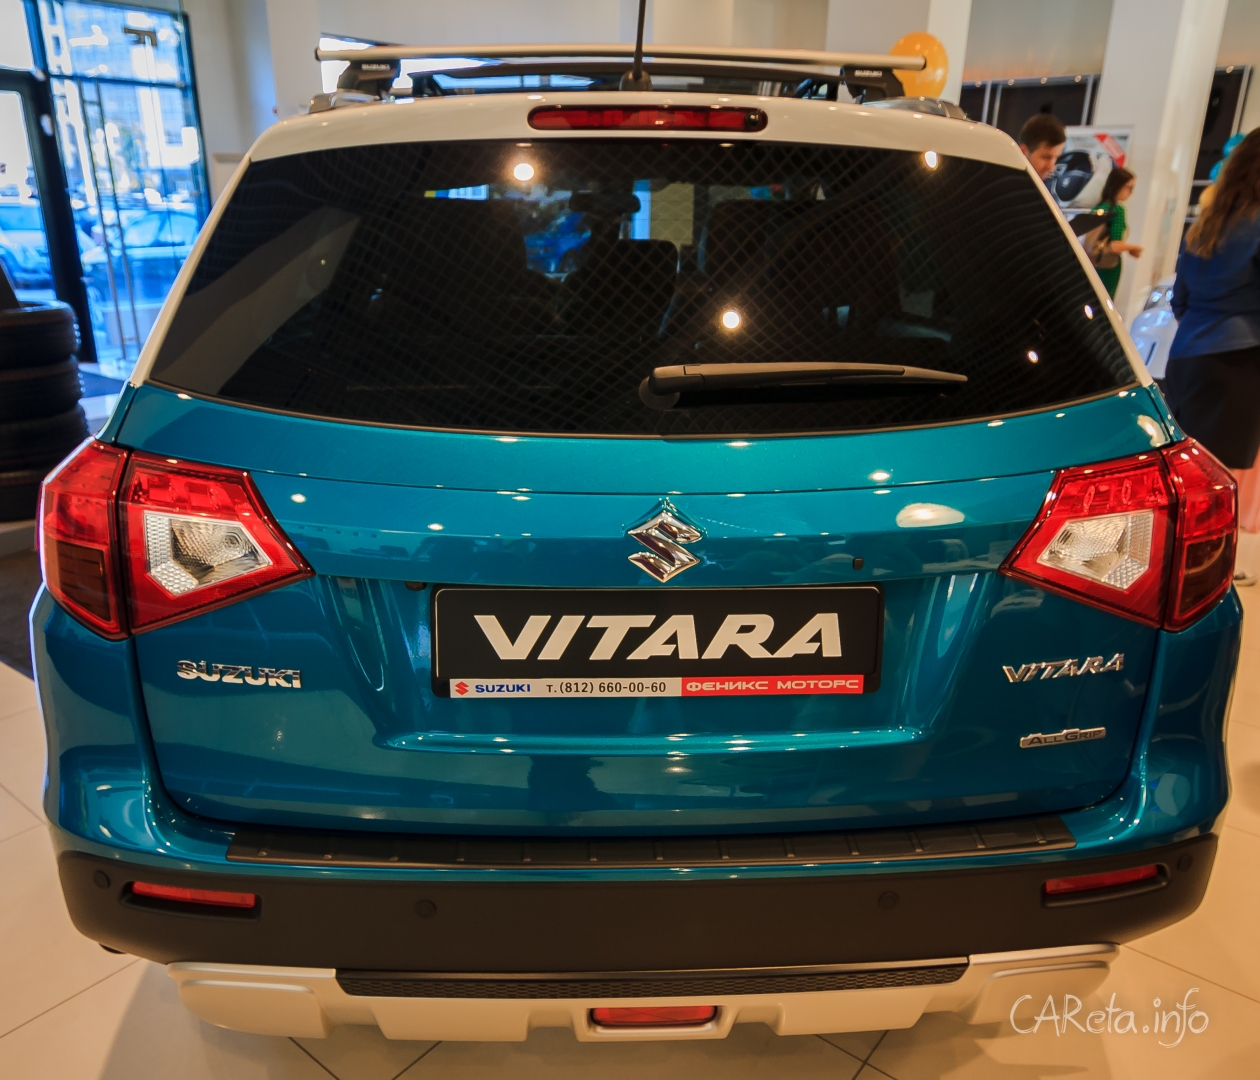 Новая Suzuki Vitara. Стремление к удешевлению.